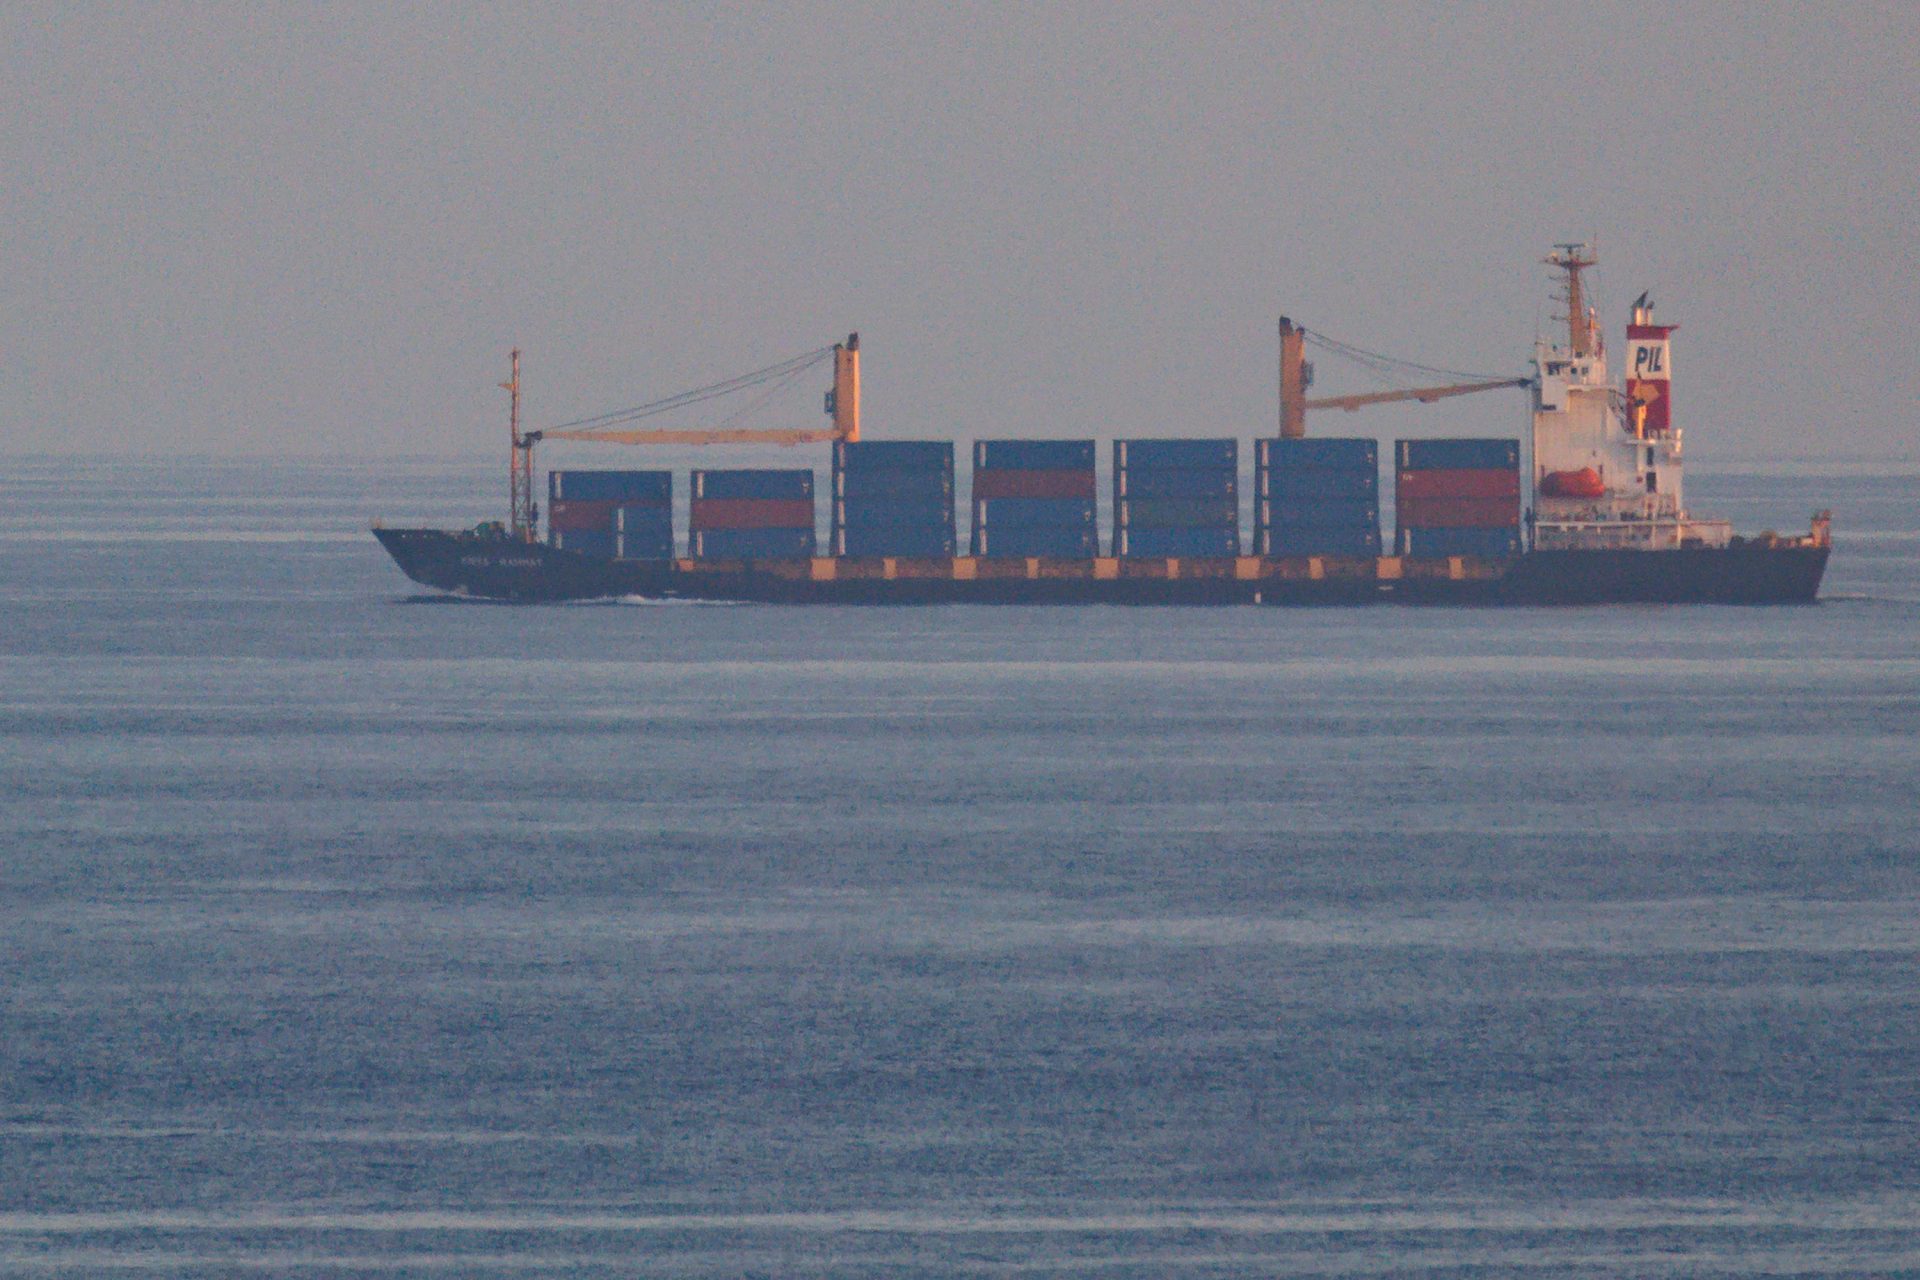 Chute de missiles près d'un navire en Mer Rouge, l'ONU réagit